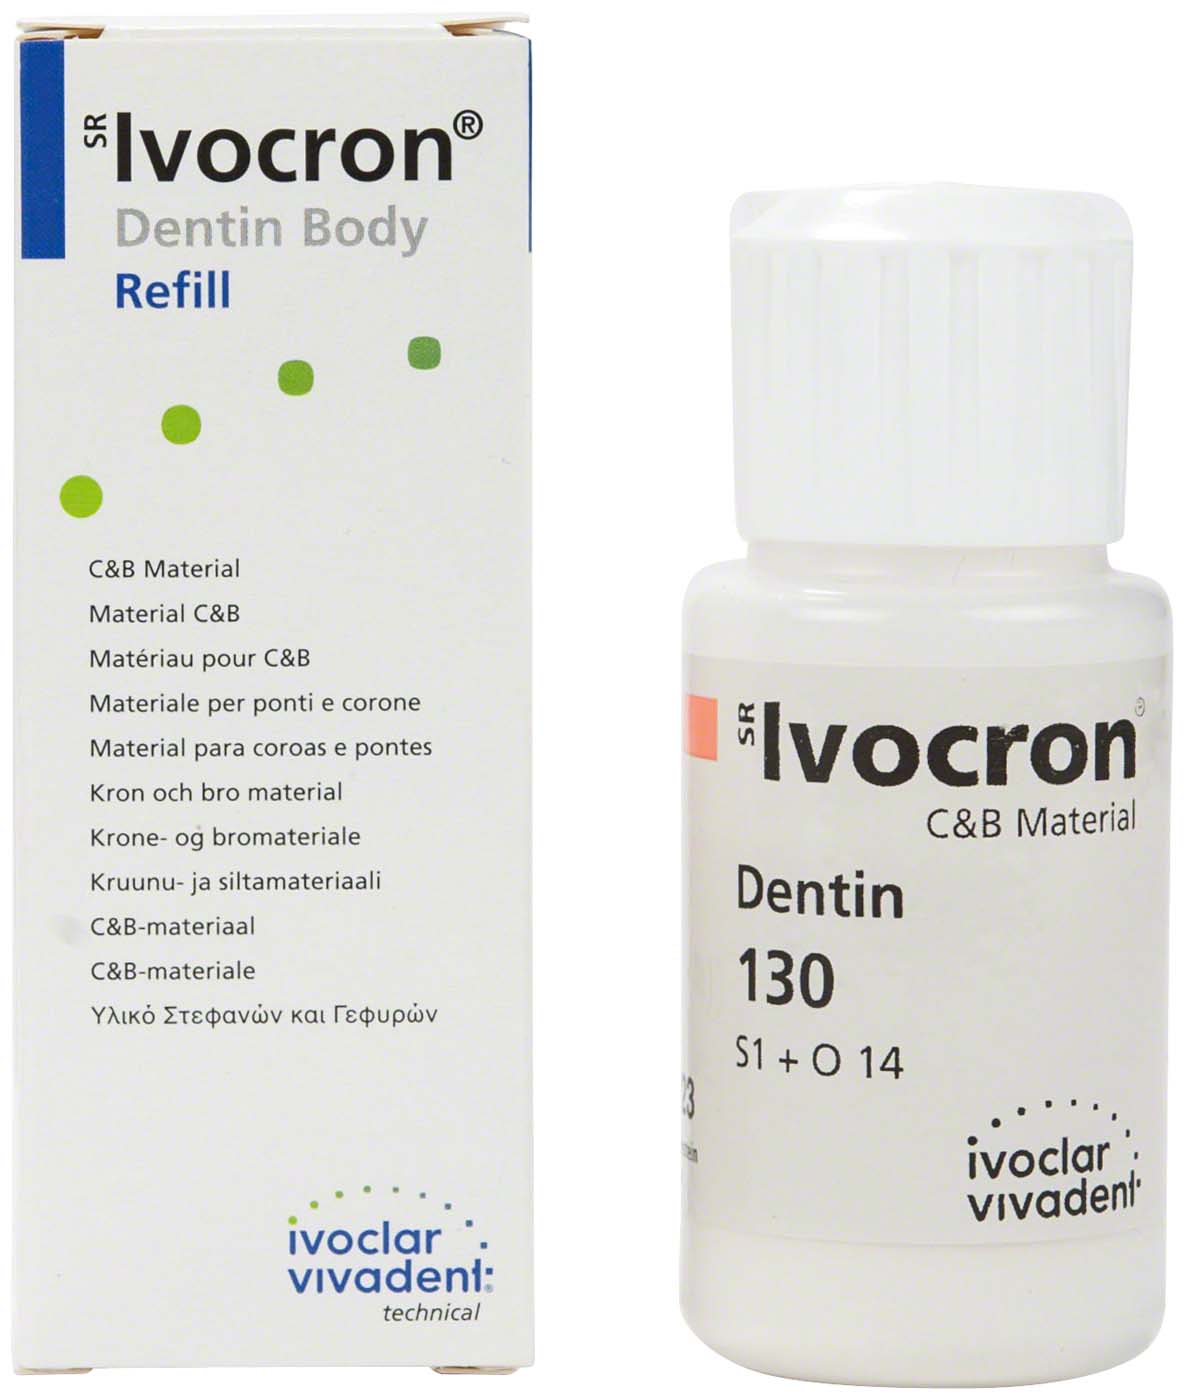 SR Ivocron® Ivoclar Vivadent